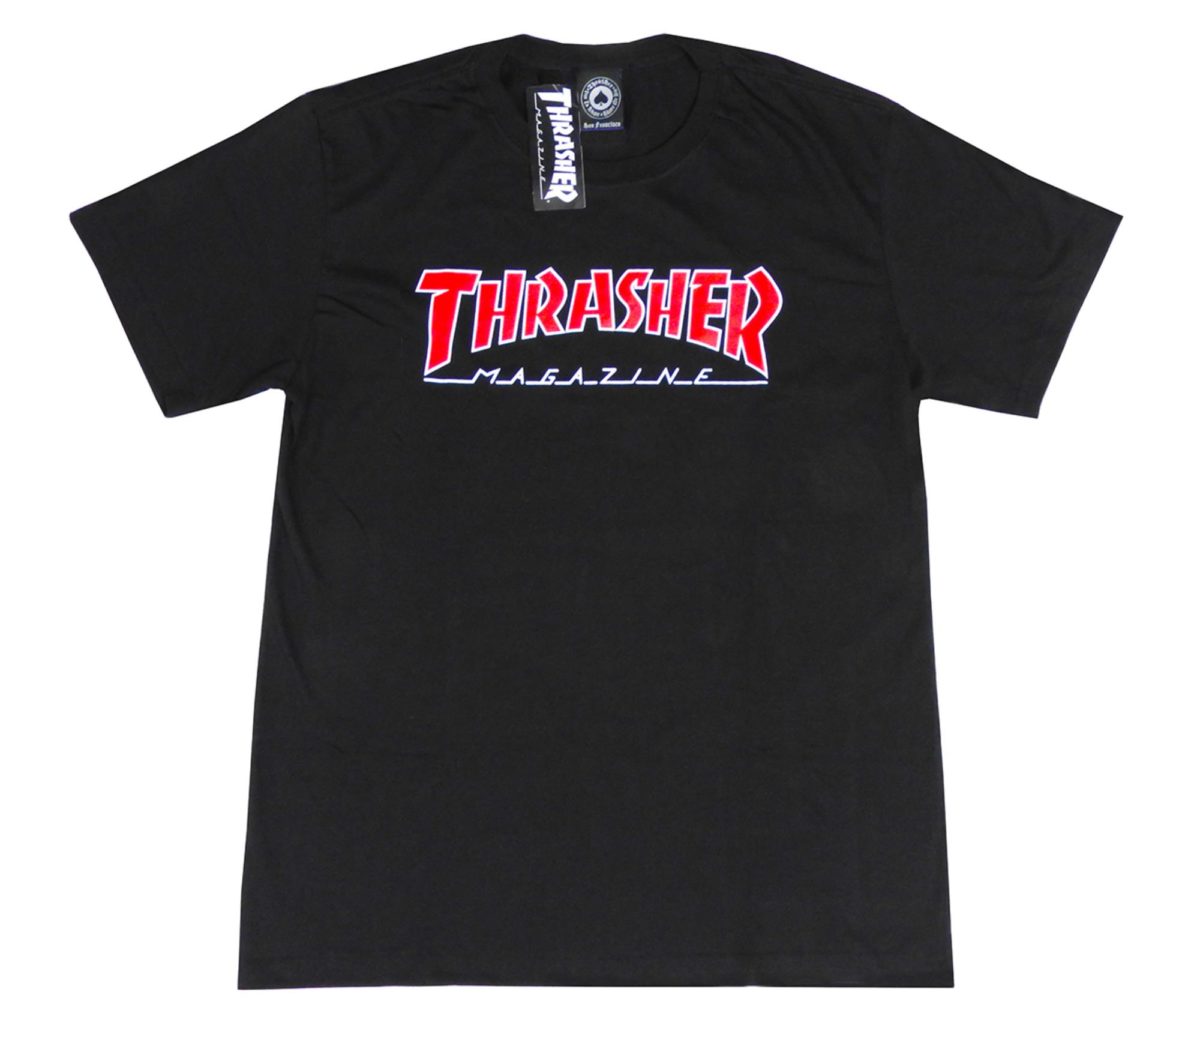 Camiseta Thrasher Outlined Preta